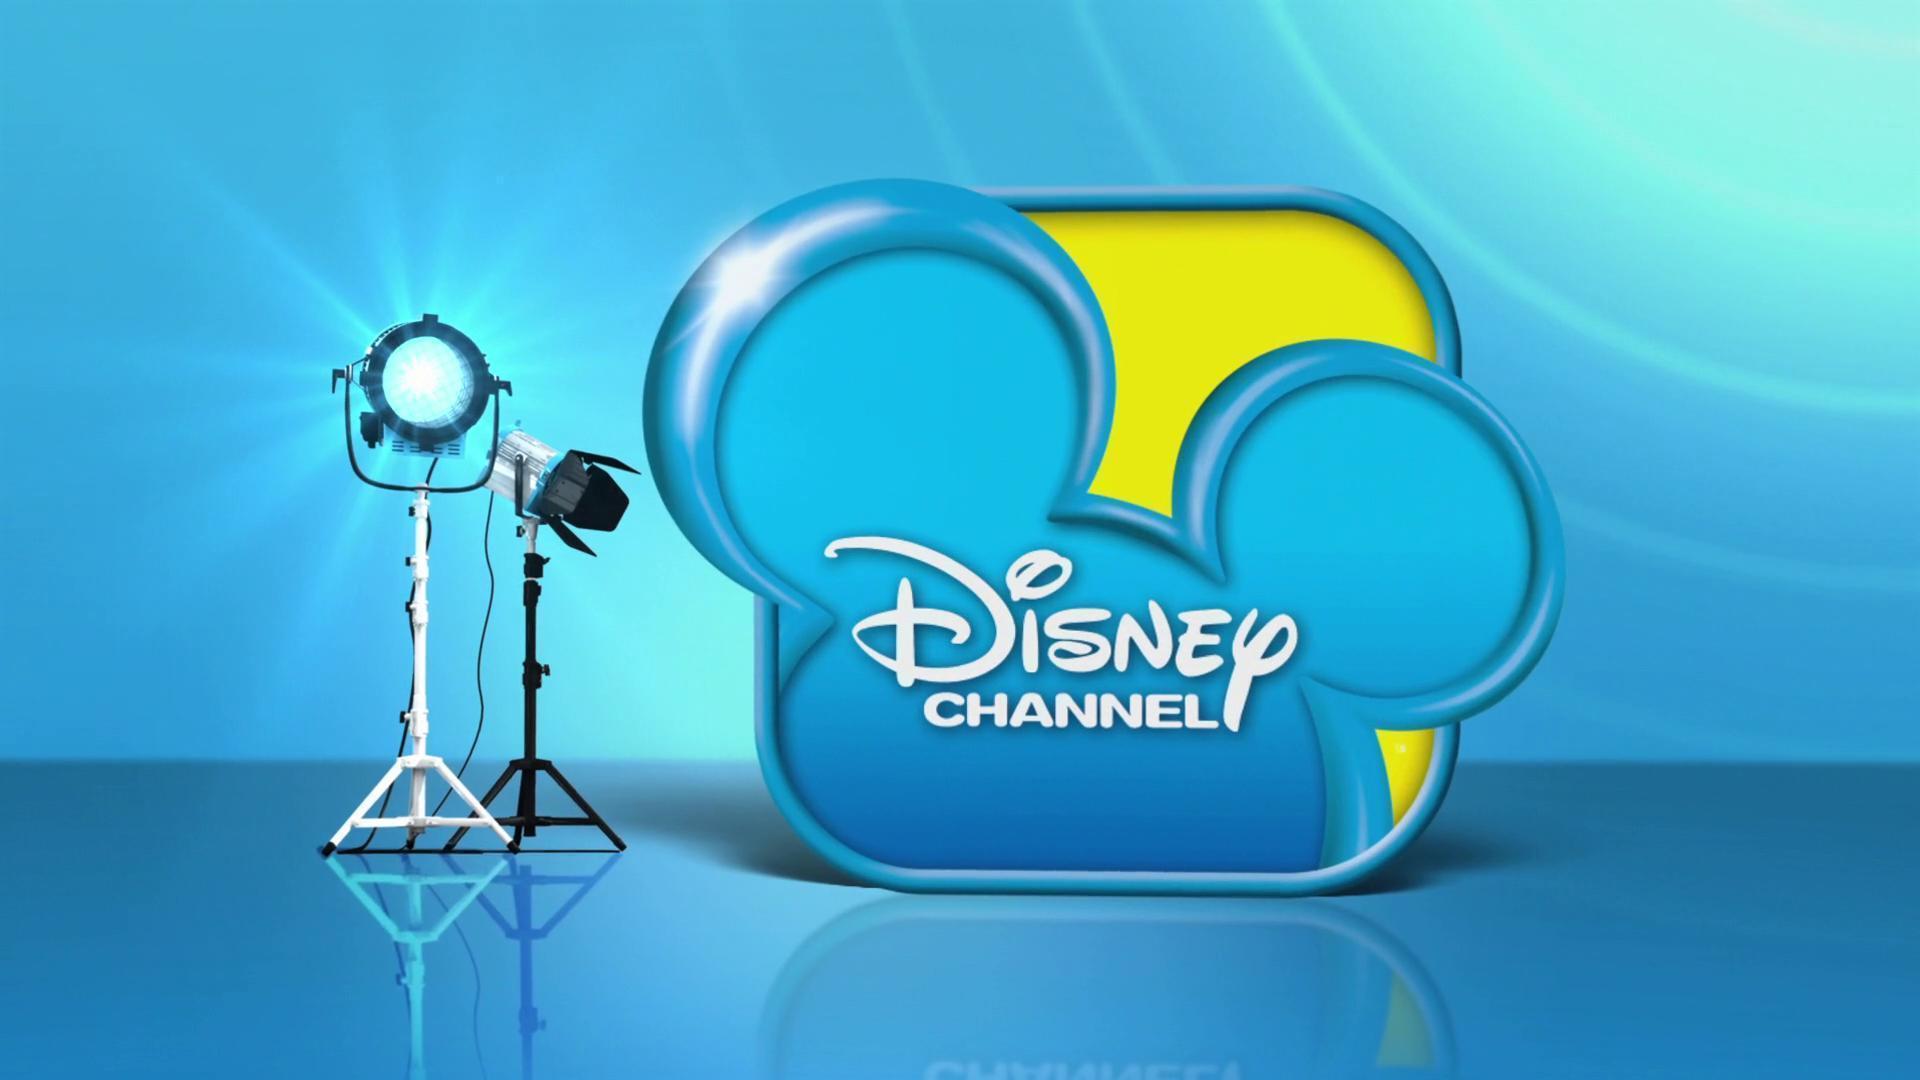 Disney Channel Wallpaper